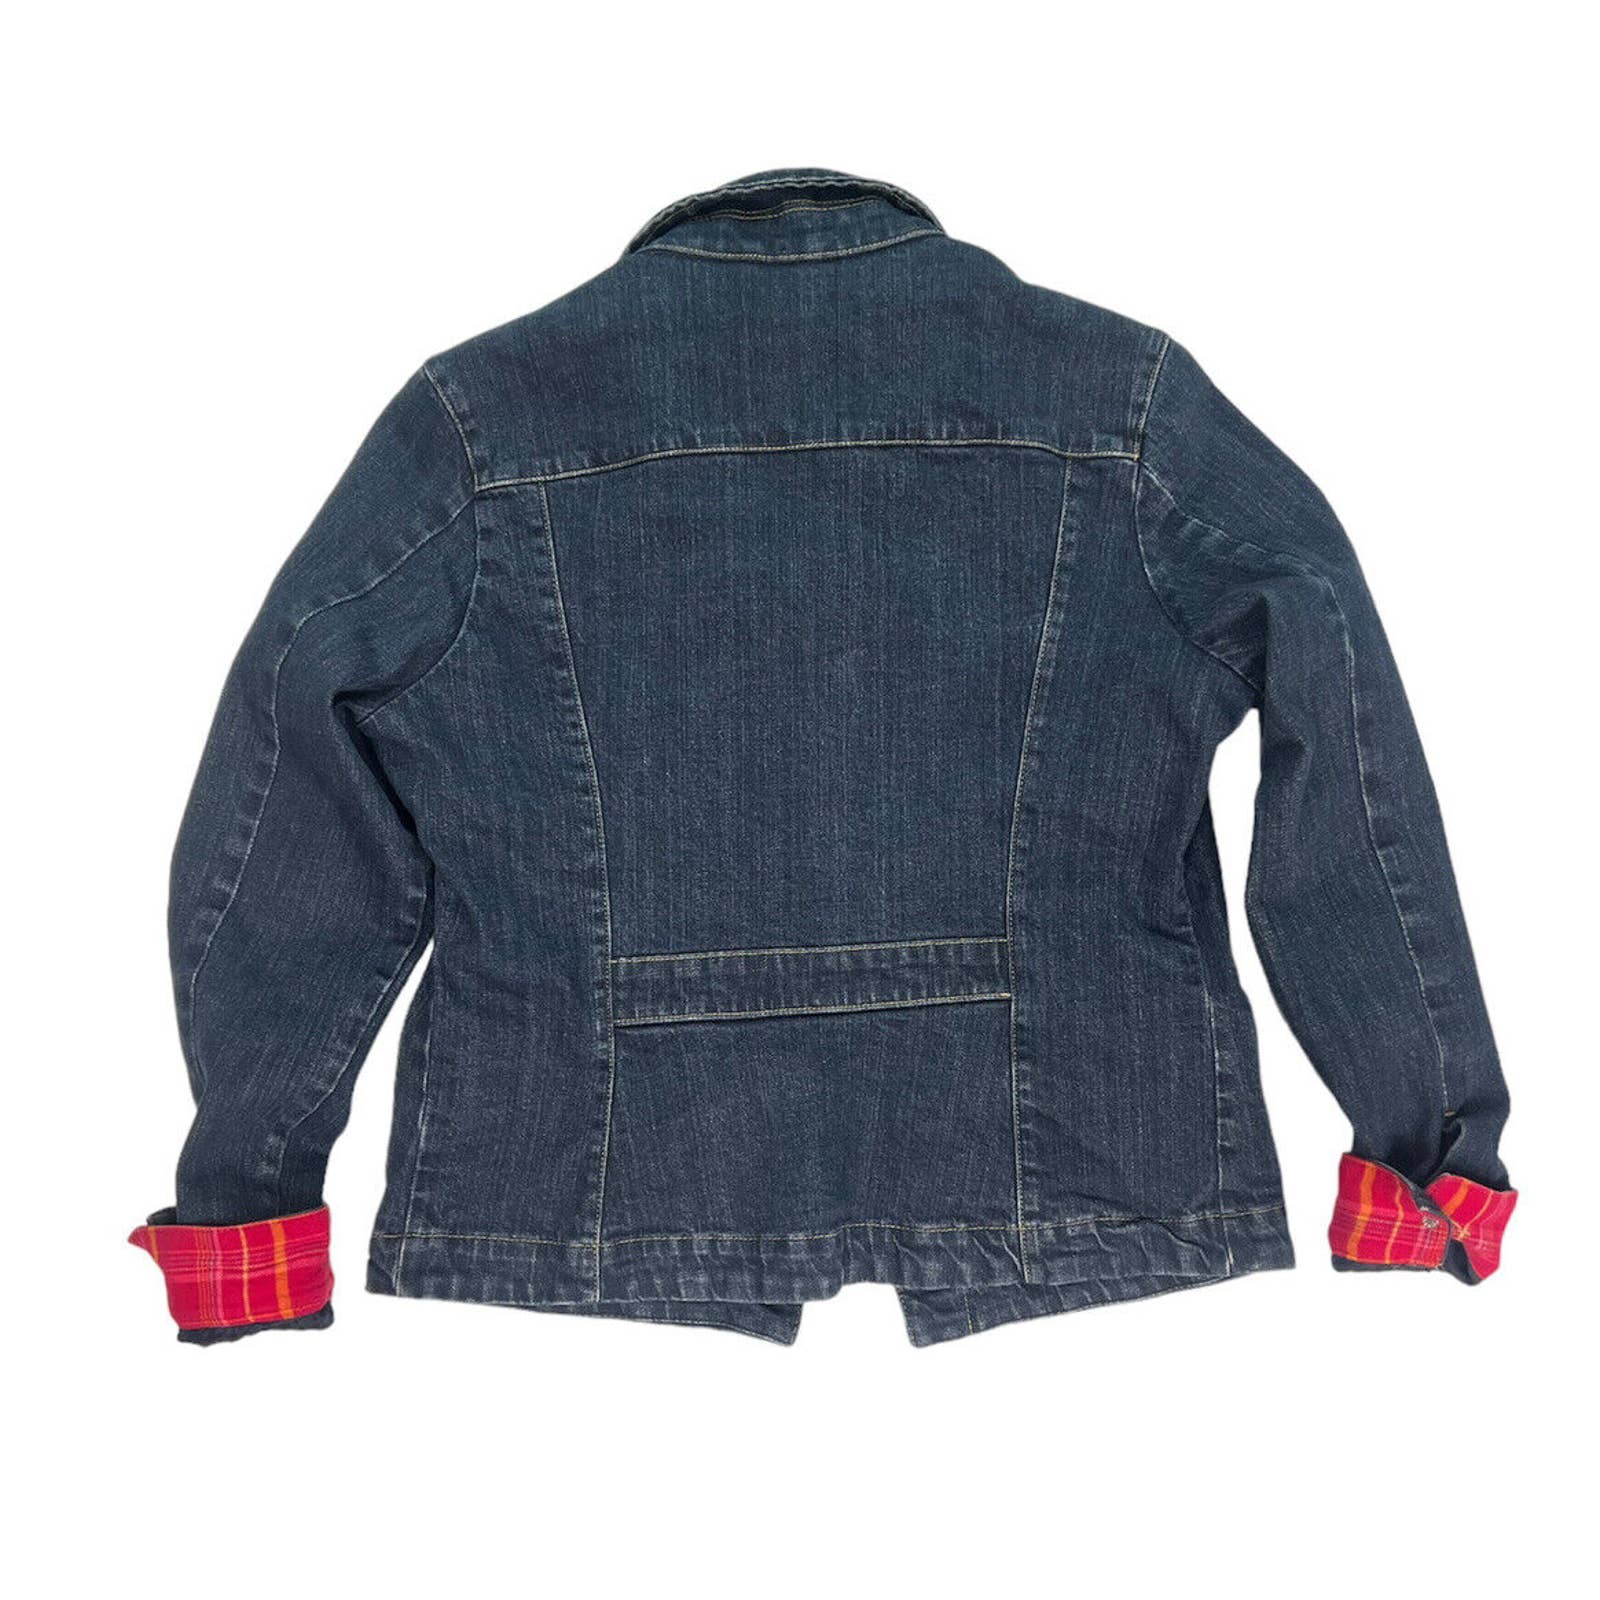 Eddie Bauer Denim Jeans Jacket Women’s Medium Trucker Style Flannel Lined